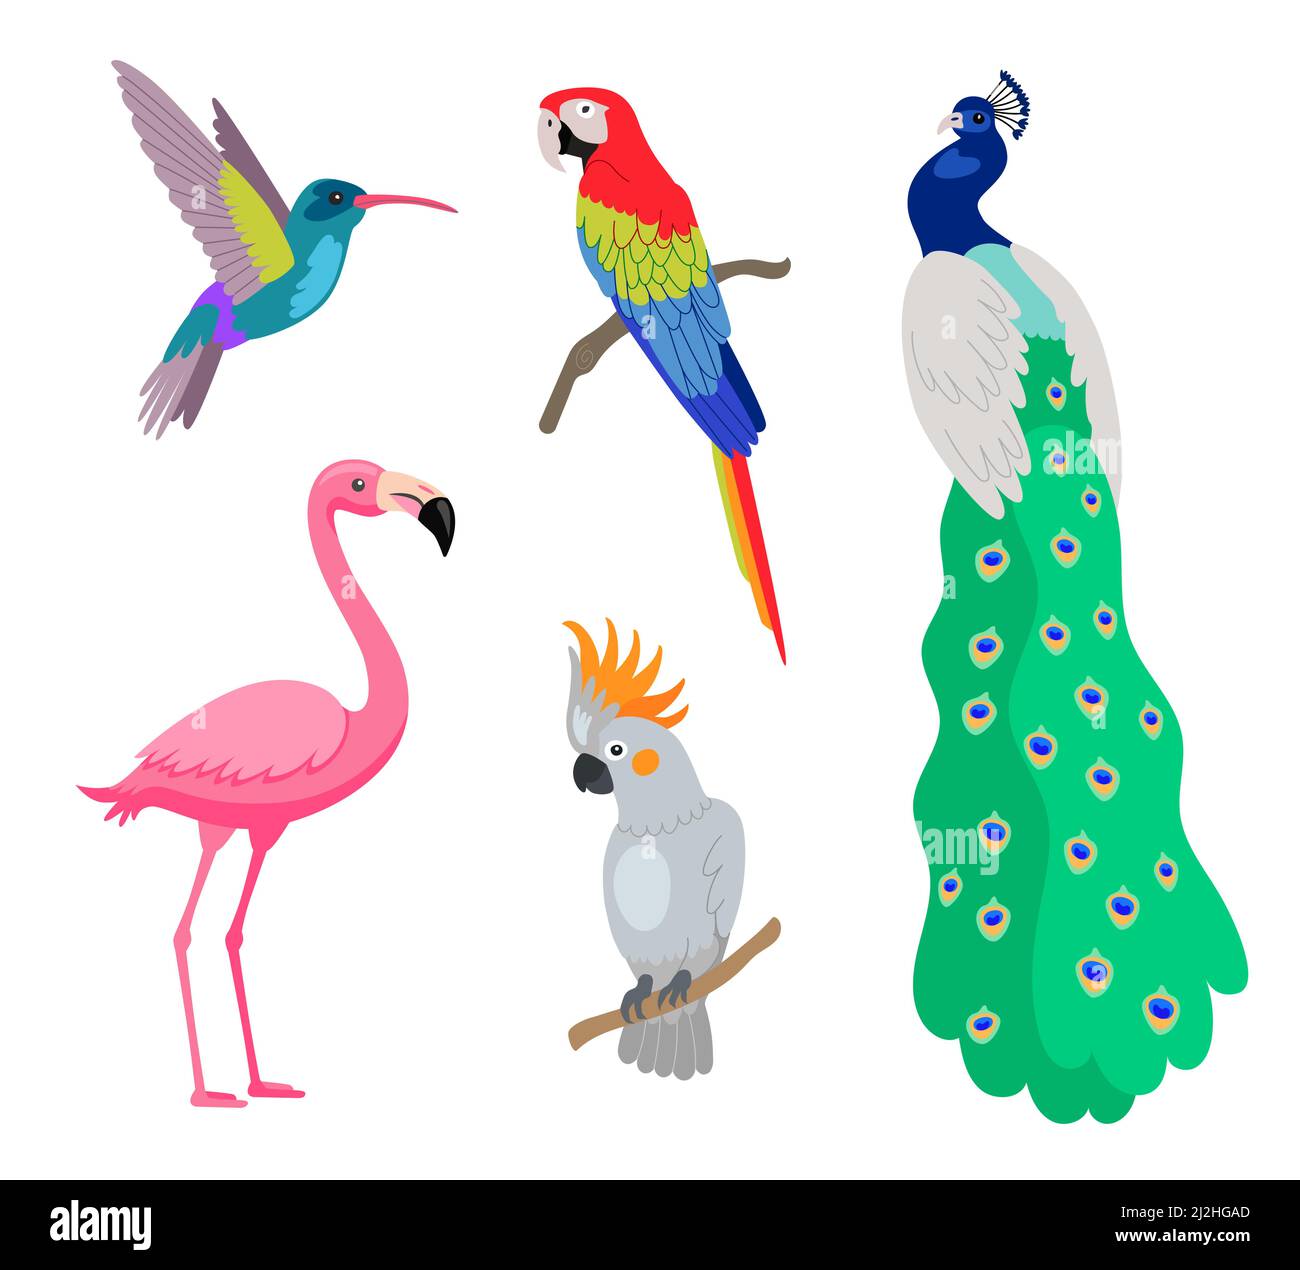 Luminoso set di illustrazioni vettoriali di uccelli esotici tropicali. Fenicottero rosa, pavone, cockatoo e pappagallo seduti su rami isolati su dorso bianco gr Illustrazione Vettoriale